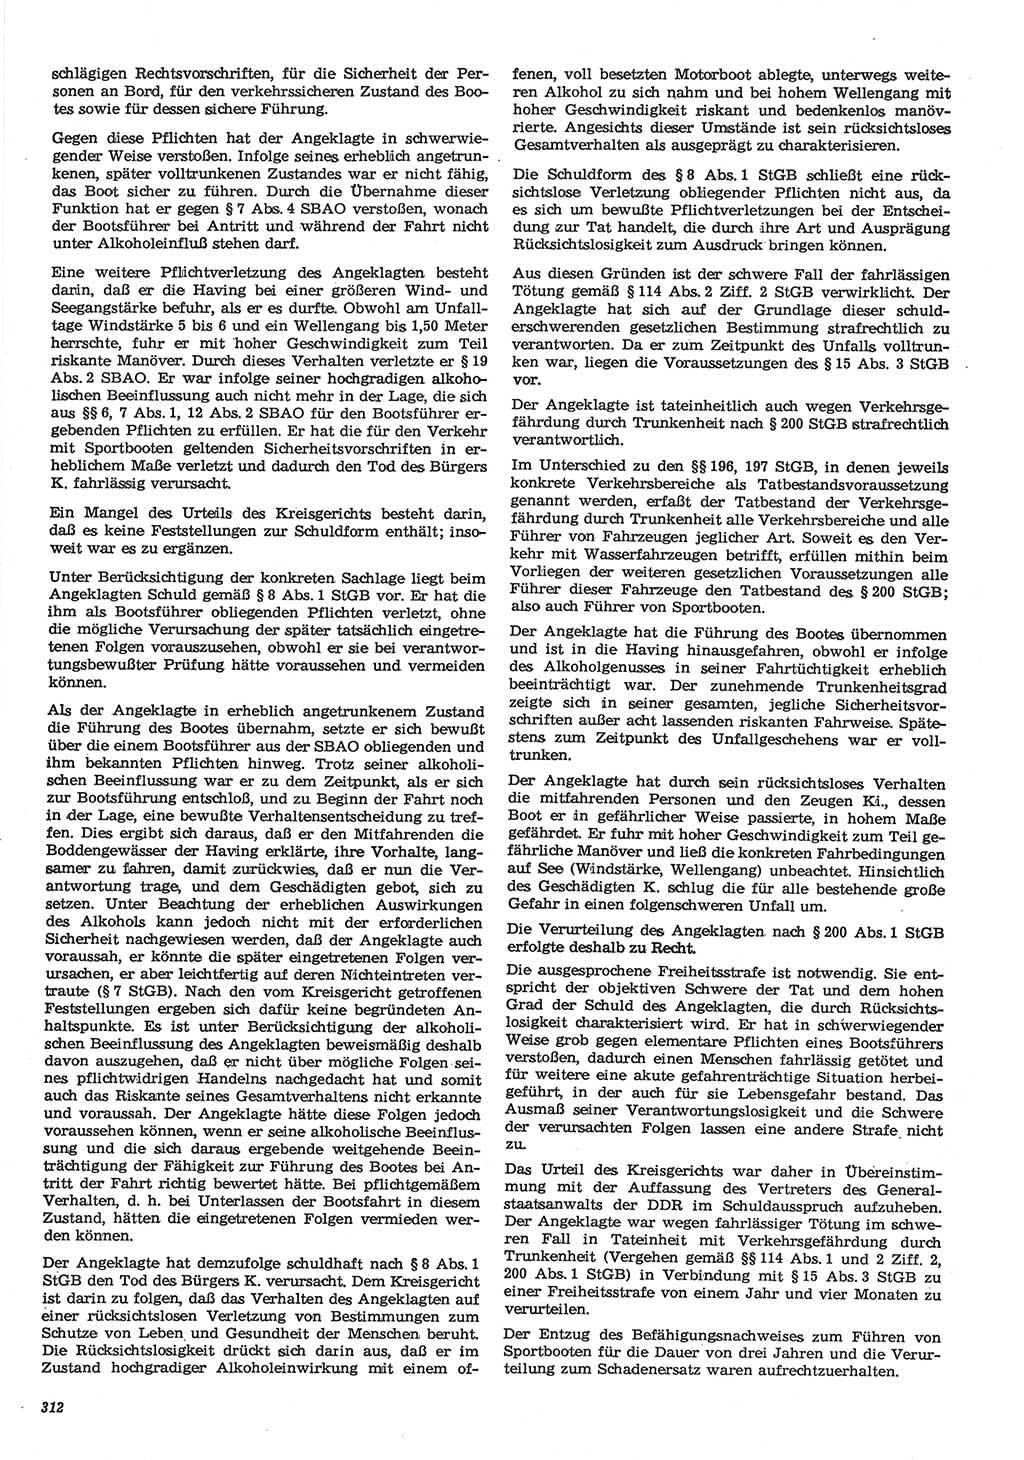 Neue Justiz (NJ), Zeitschrift für Recht und Rechtswissenschaft-Zeitschrift, sozialistisches Recht und Gesetzlichkeit, 31. Jahrgang 1977, Seite 312 (NJ DDR 1977, S. 312)